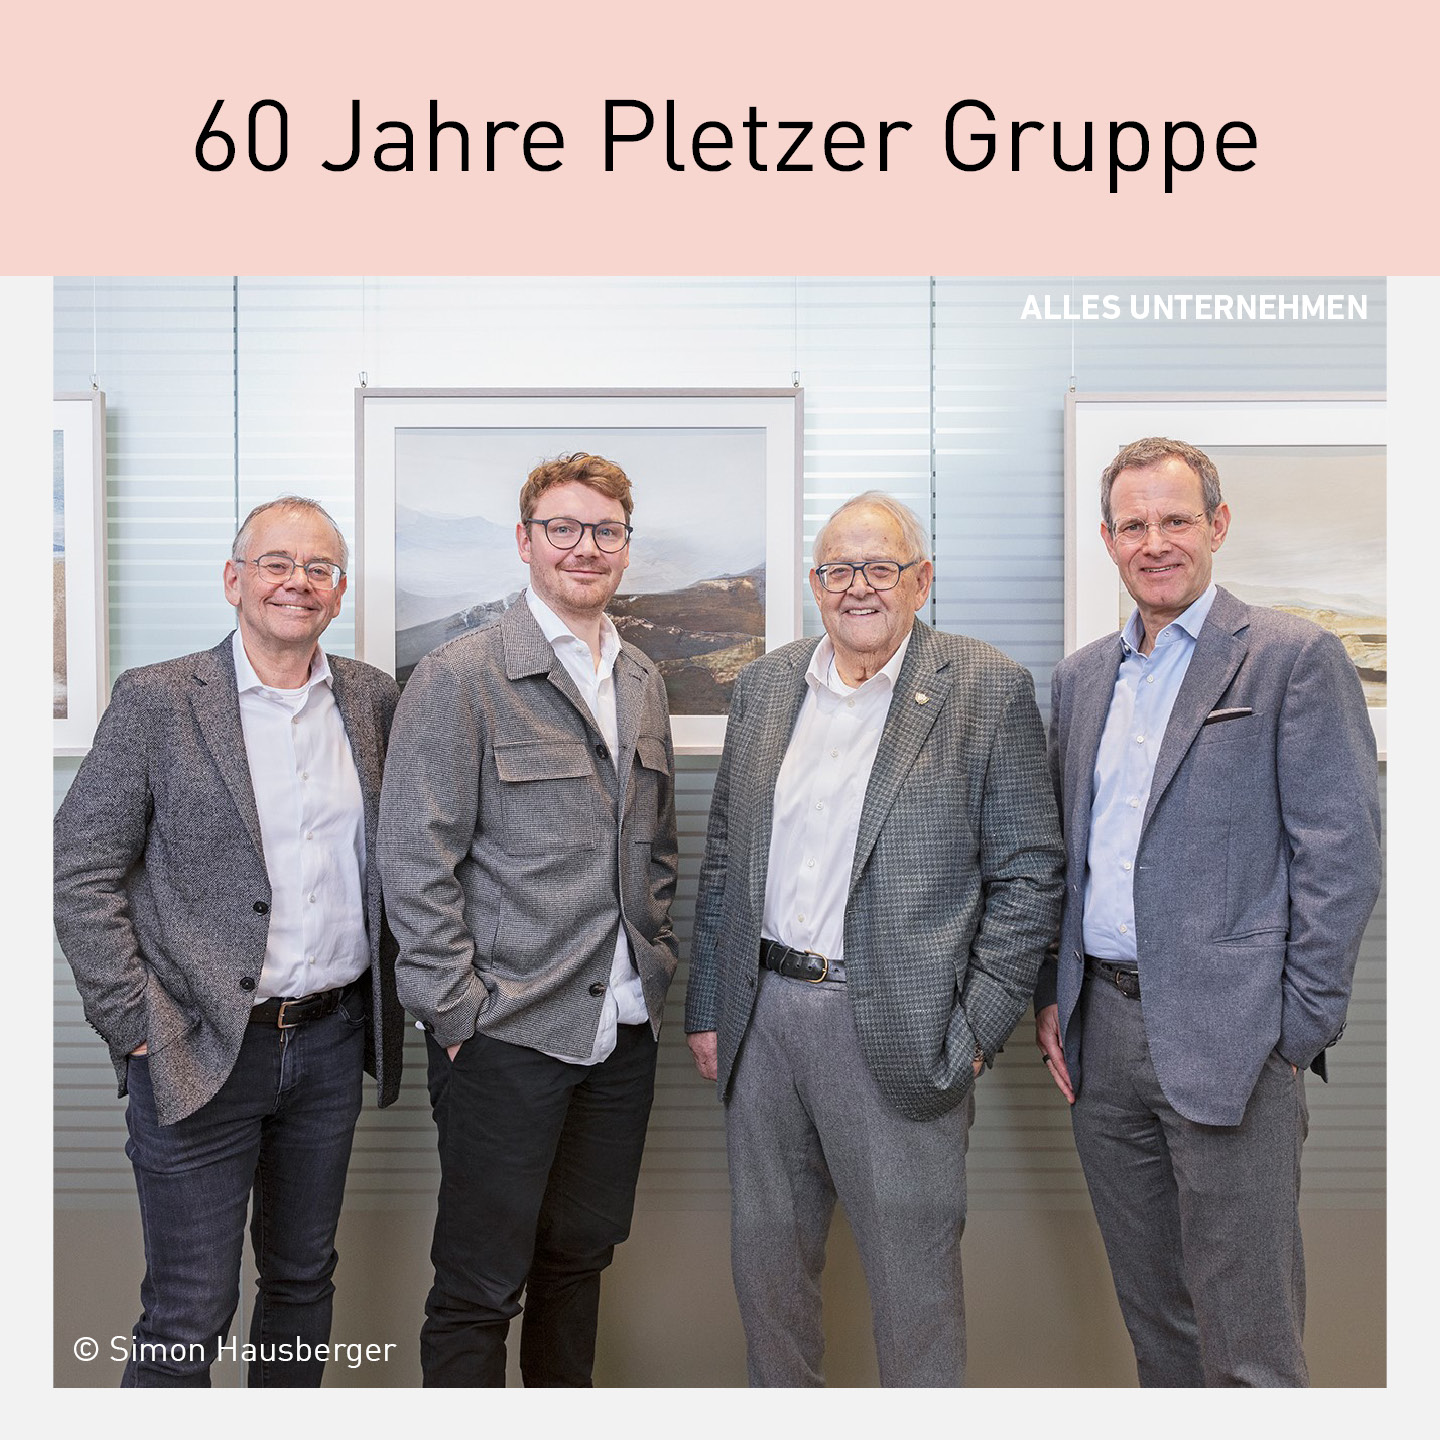 60 Jahre Pletzer Gruppe